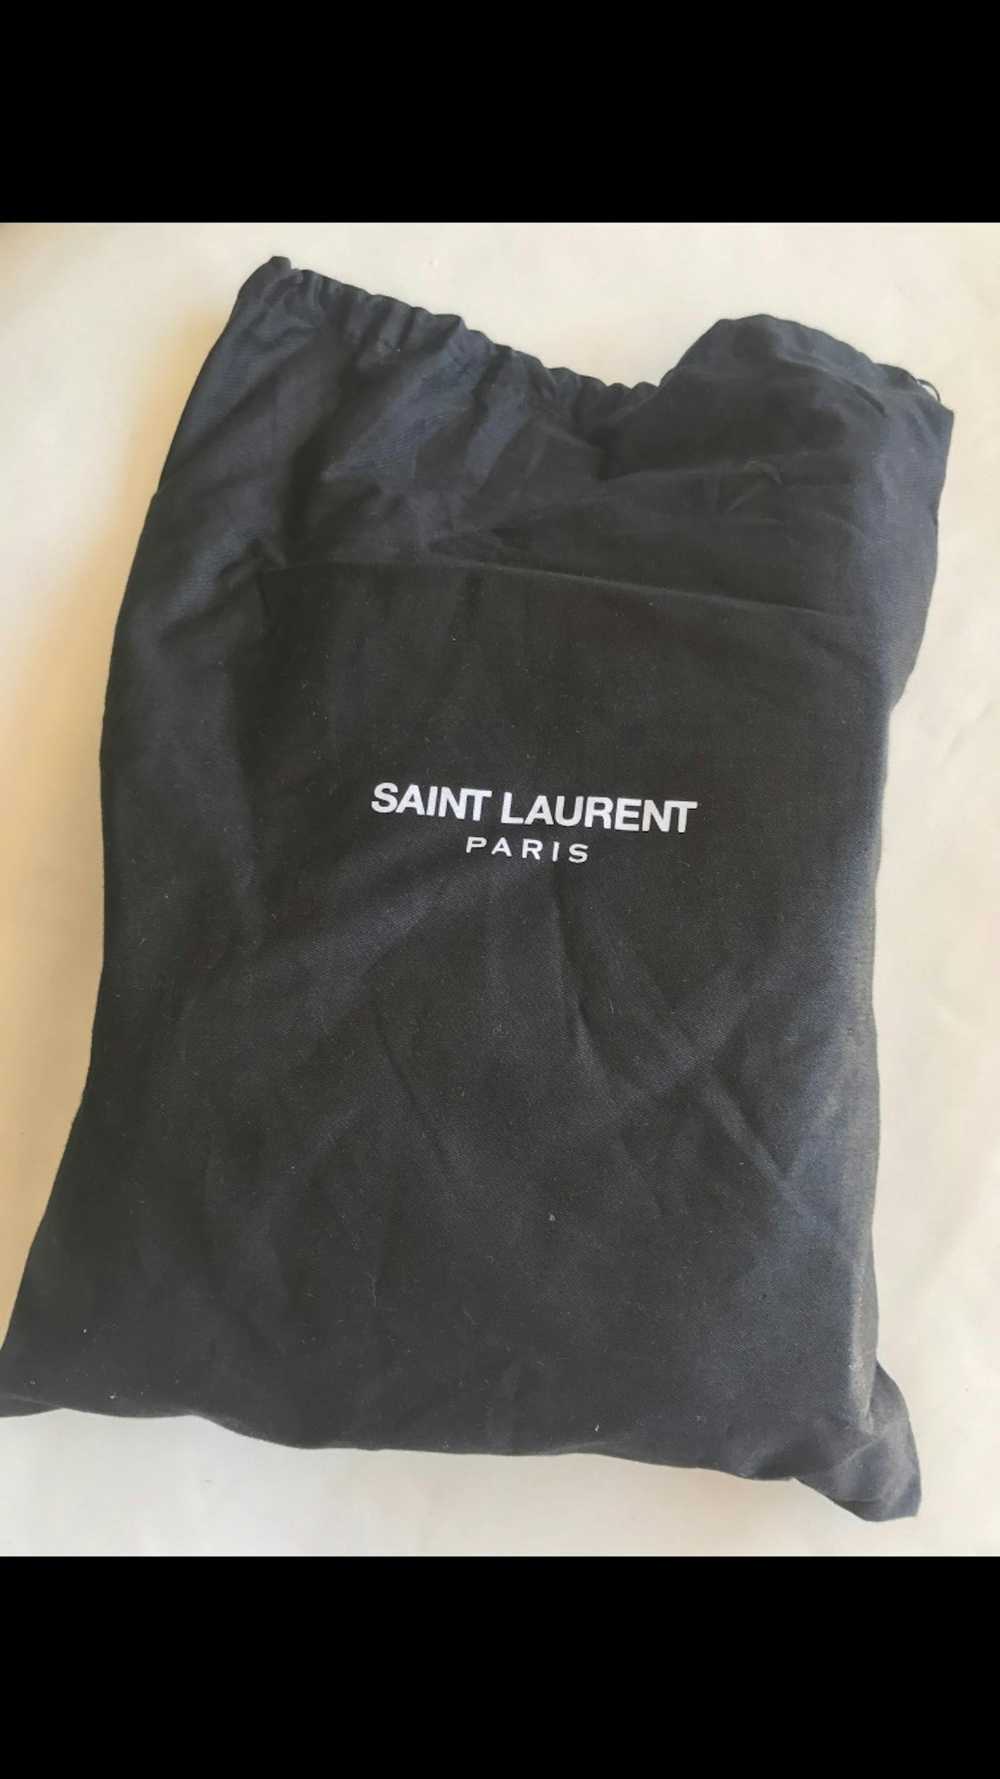 Saint Laurent Paris Saint Laurent Chelsea Boot - image 3